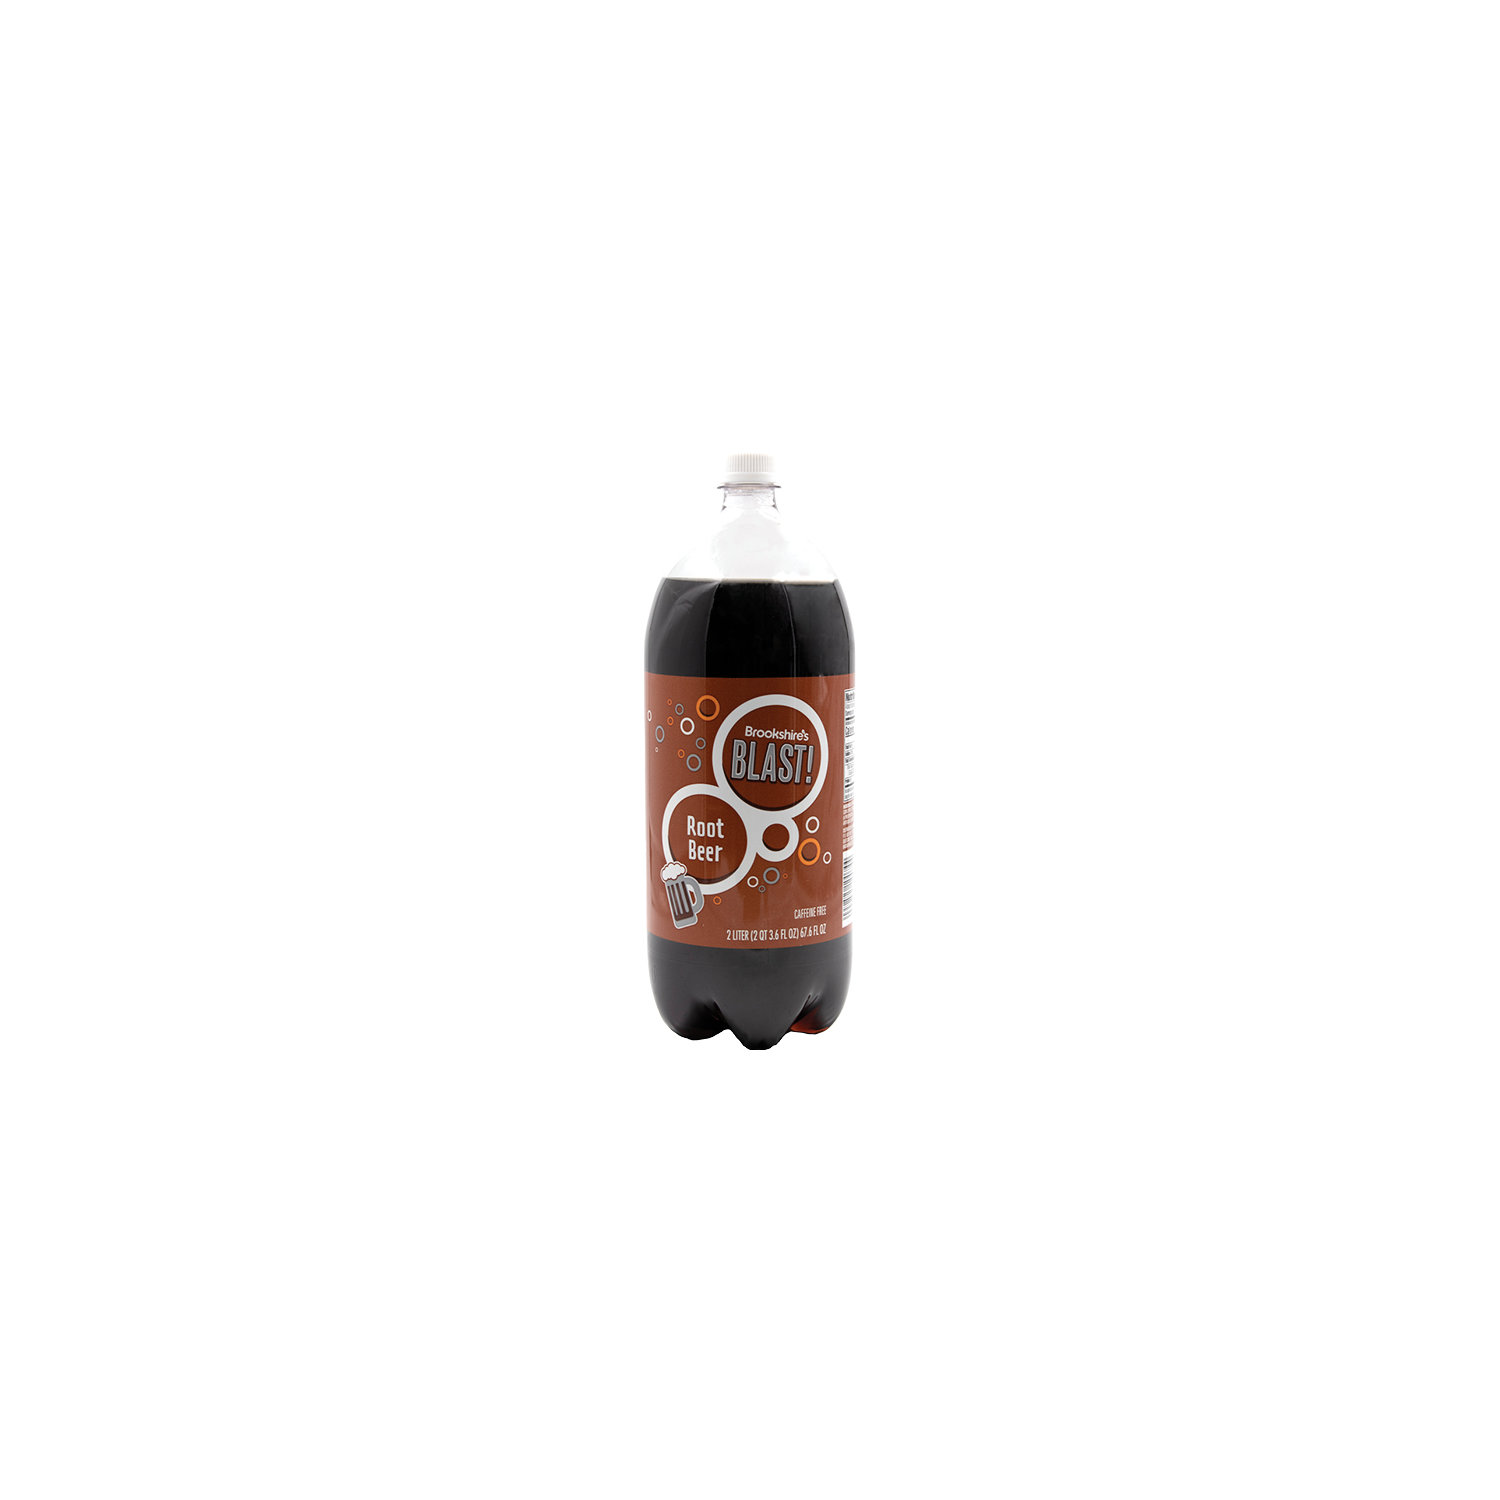 Mug Soda, Root Beer 2.1 qt, Shop